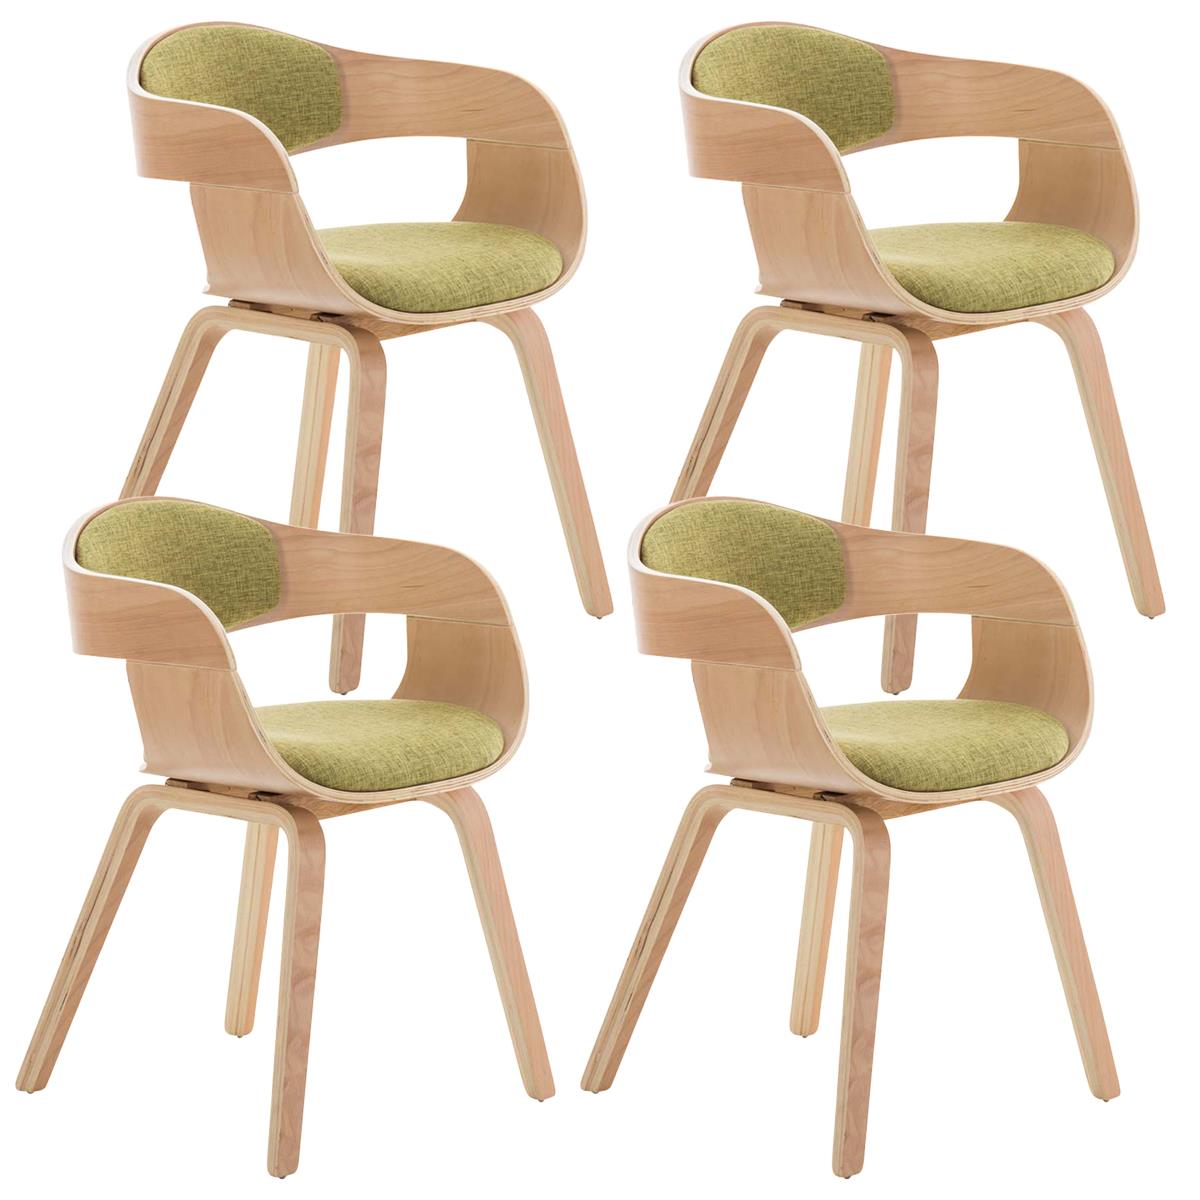 Lote de 4 sillas de Comedor BOLONIA, en Tela Verde, Estructura de Madera color Natural